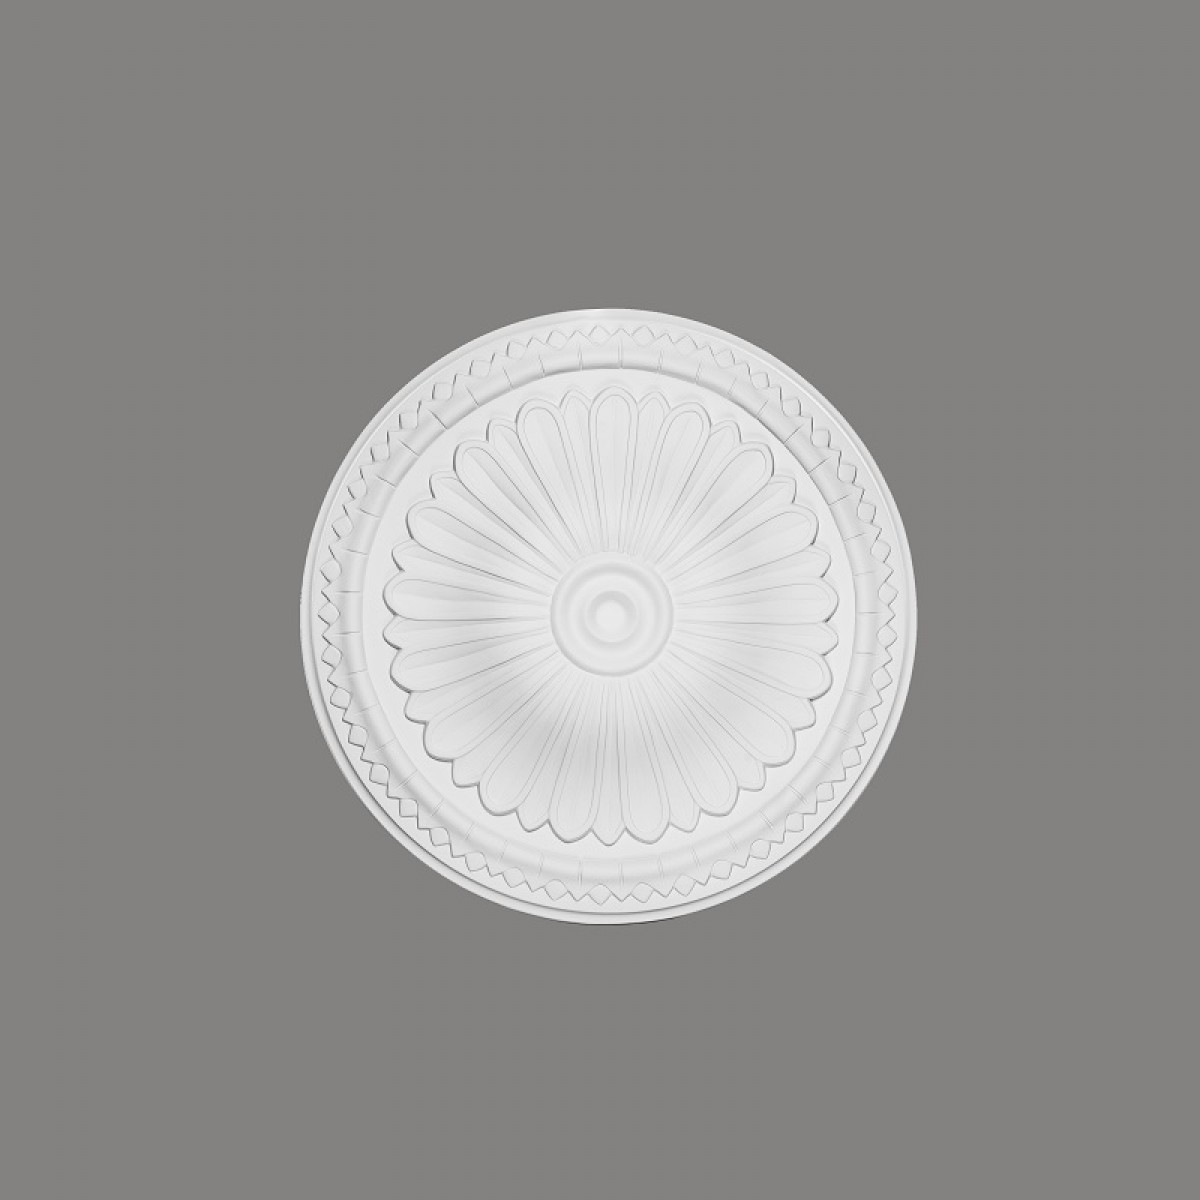 Rozeta decorativa B3029, Dimensiuni: Diam. 38 cm (H: 4.5 cm), Mardom Decor, Rozete decorative 